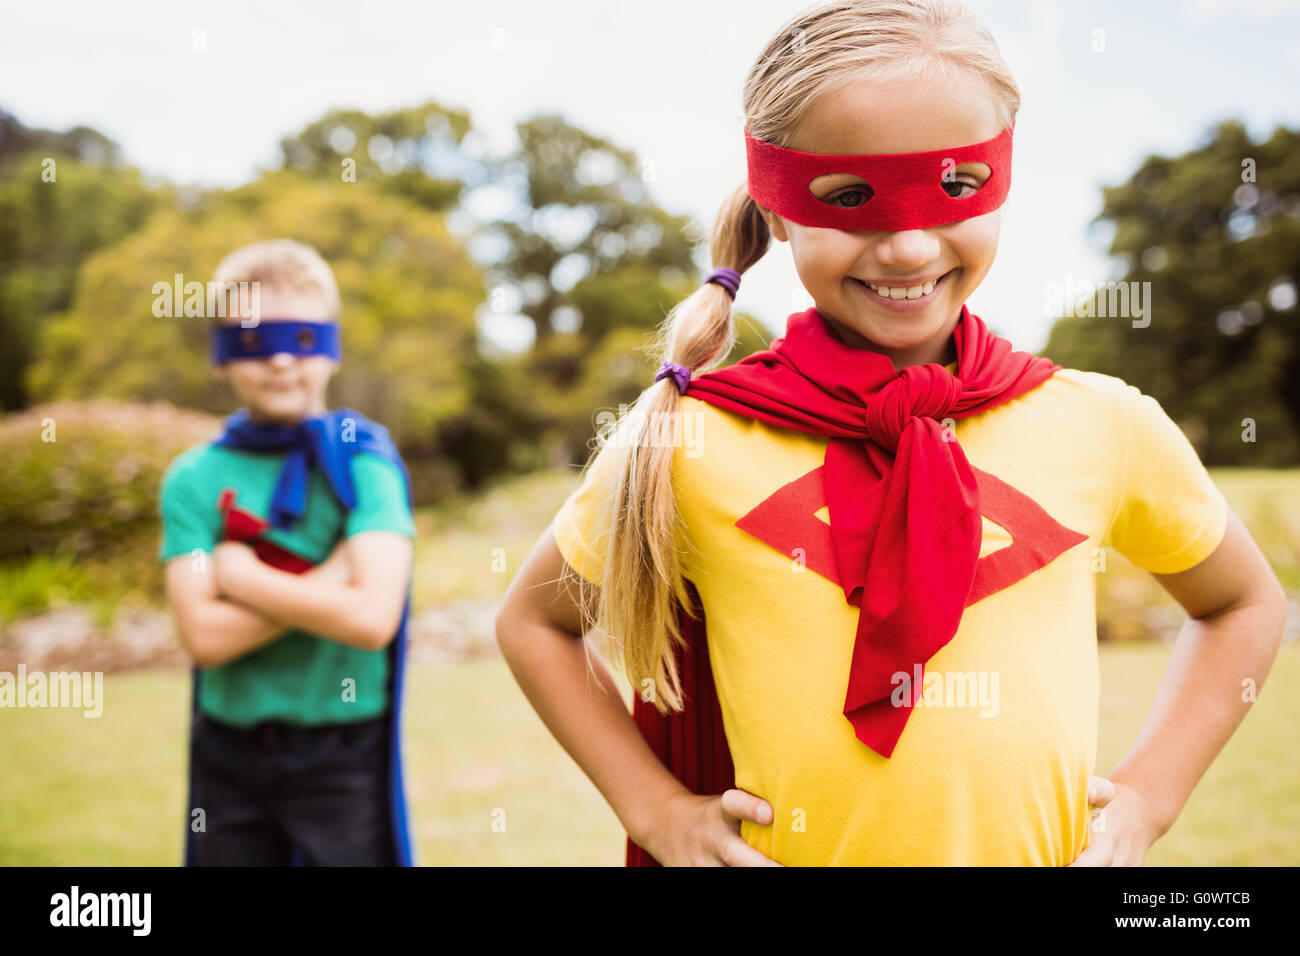 Children wearing superhero costume posing for camera Stock Photo